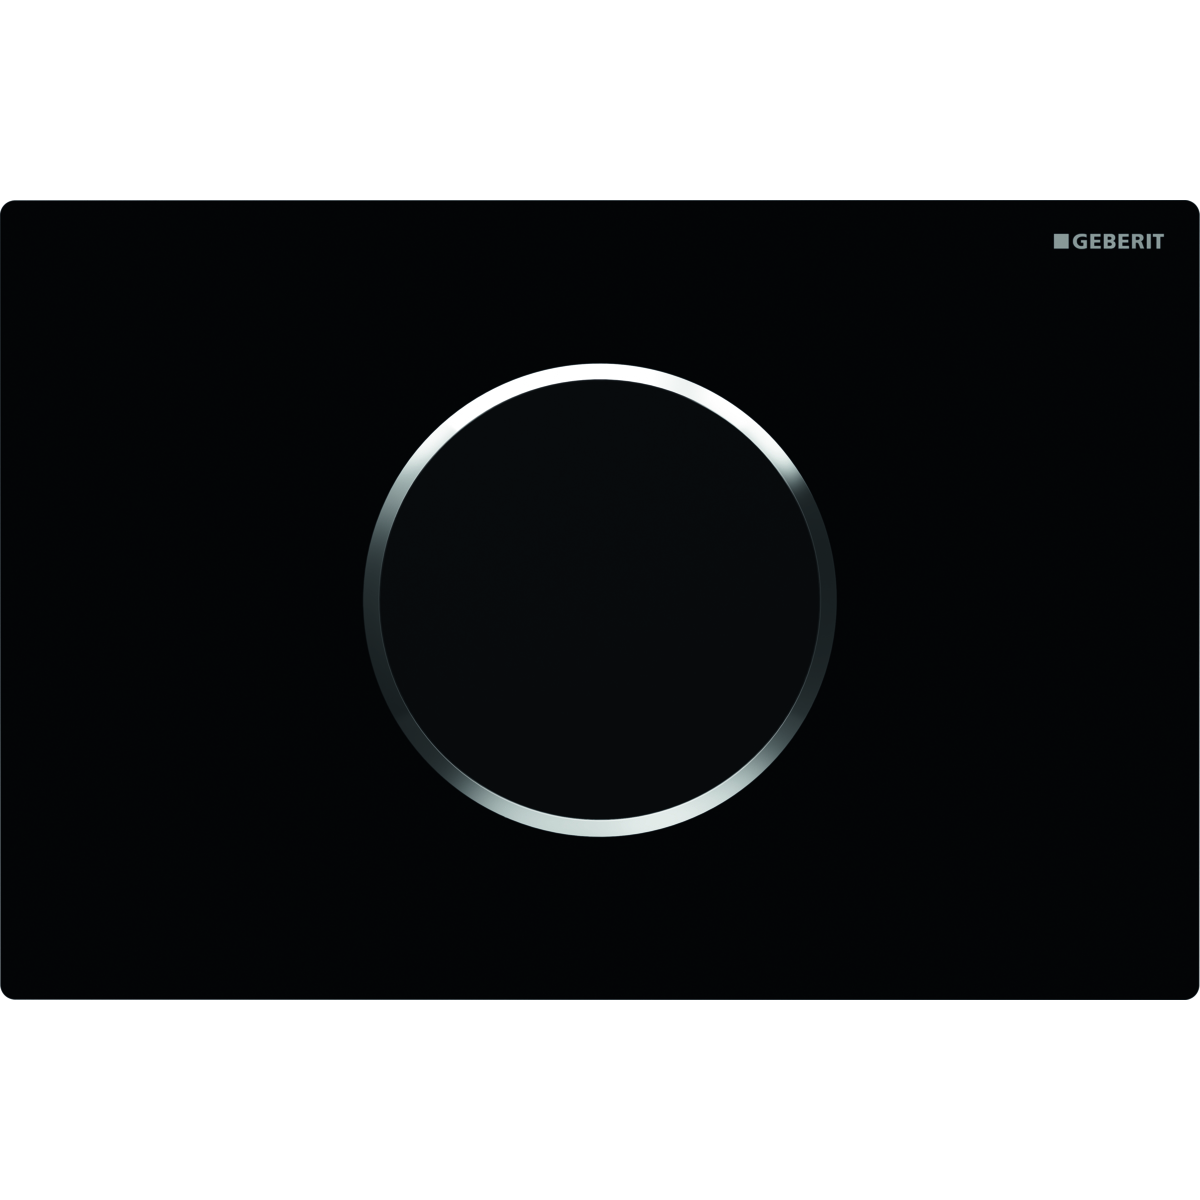 Fotoselli Kapak Sigma 10 -Elektrikli, 12 cm Gömme Rezervuarlar için-Siyah/Parlak